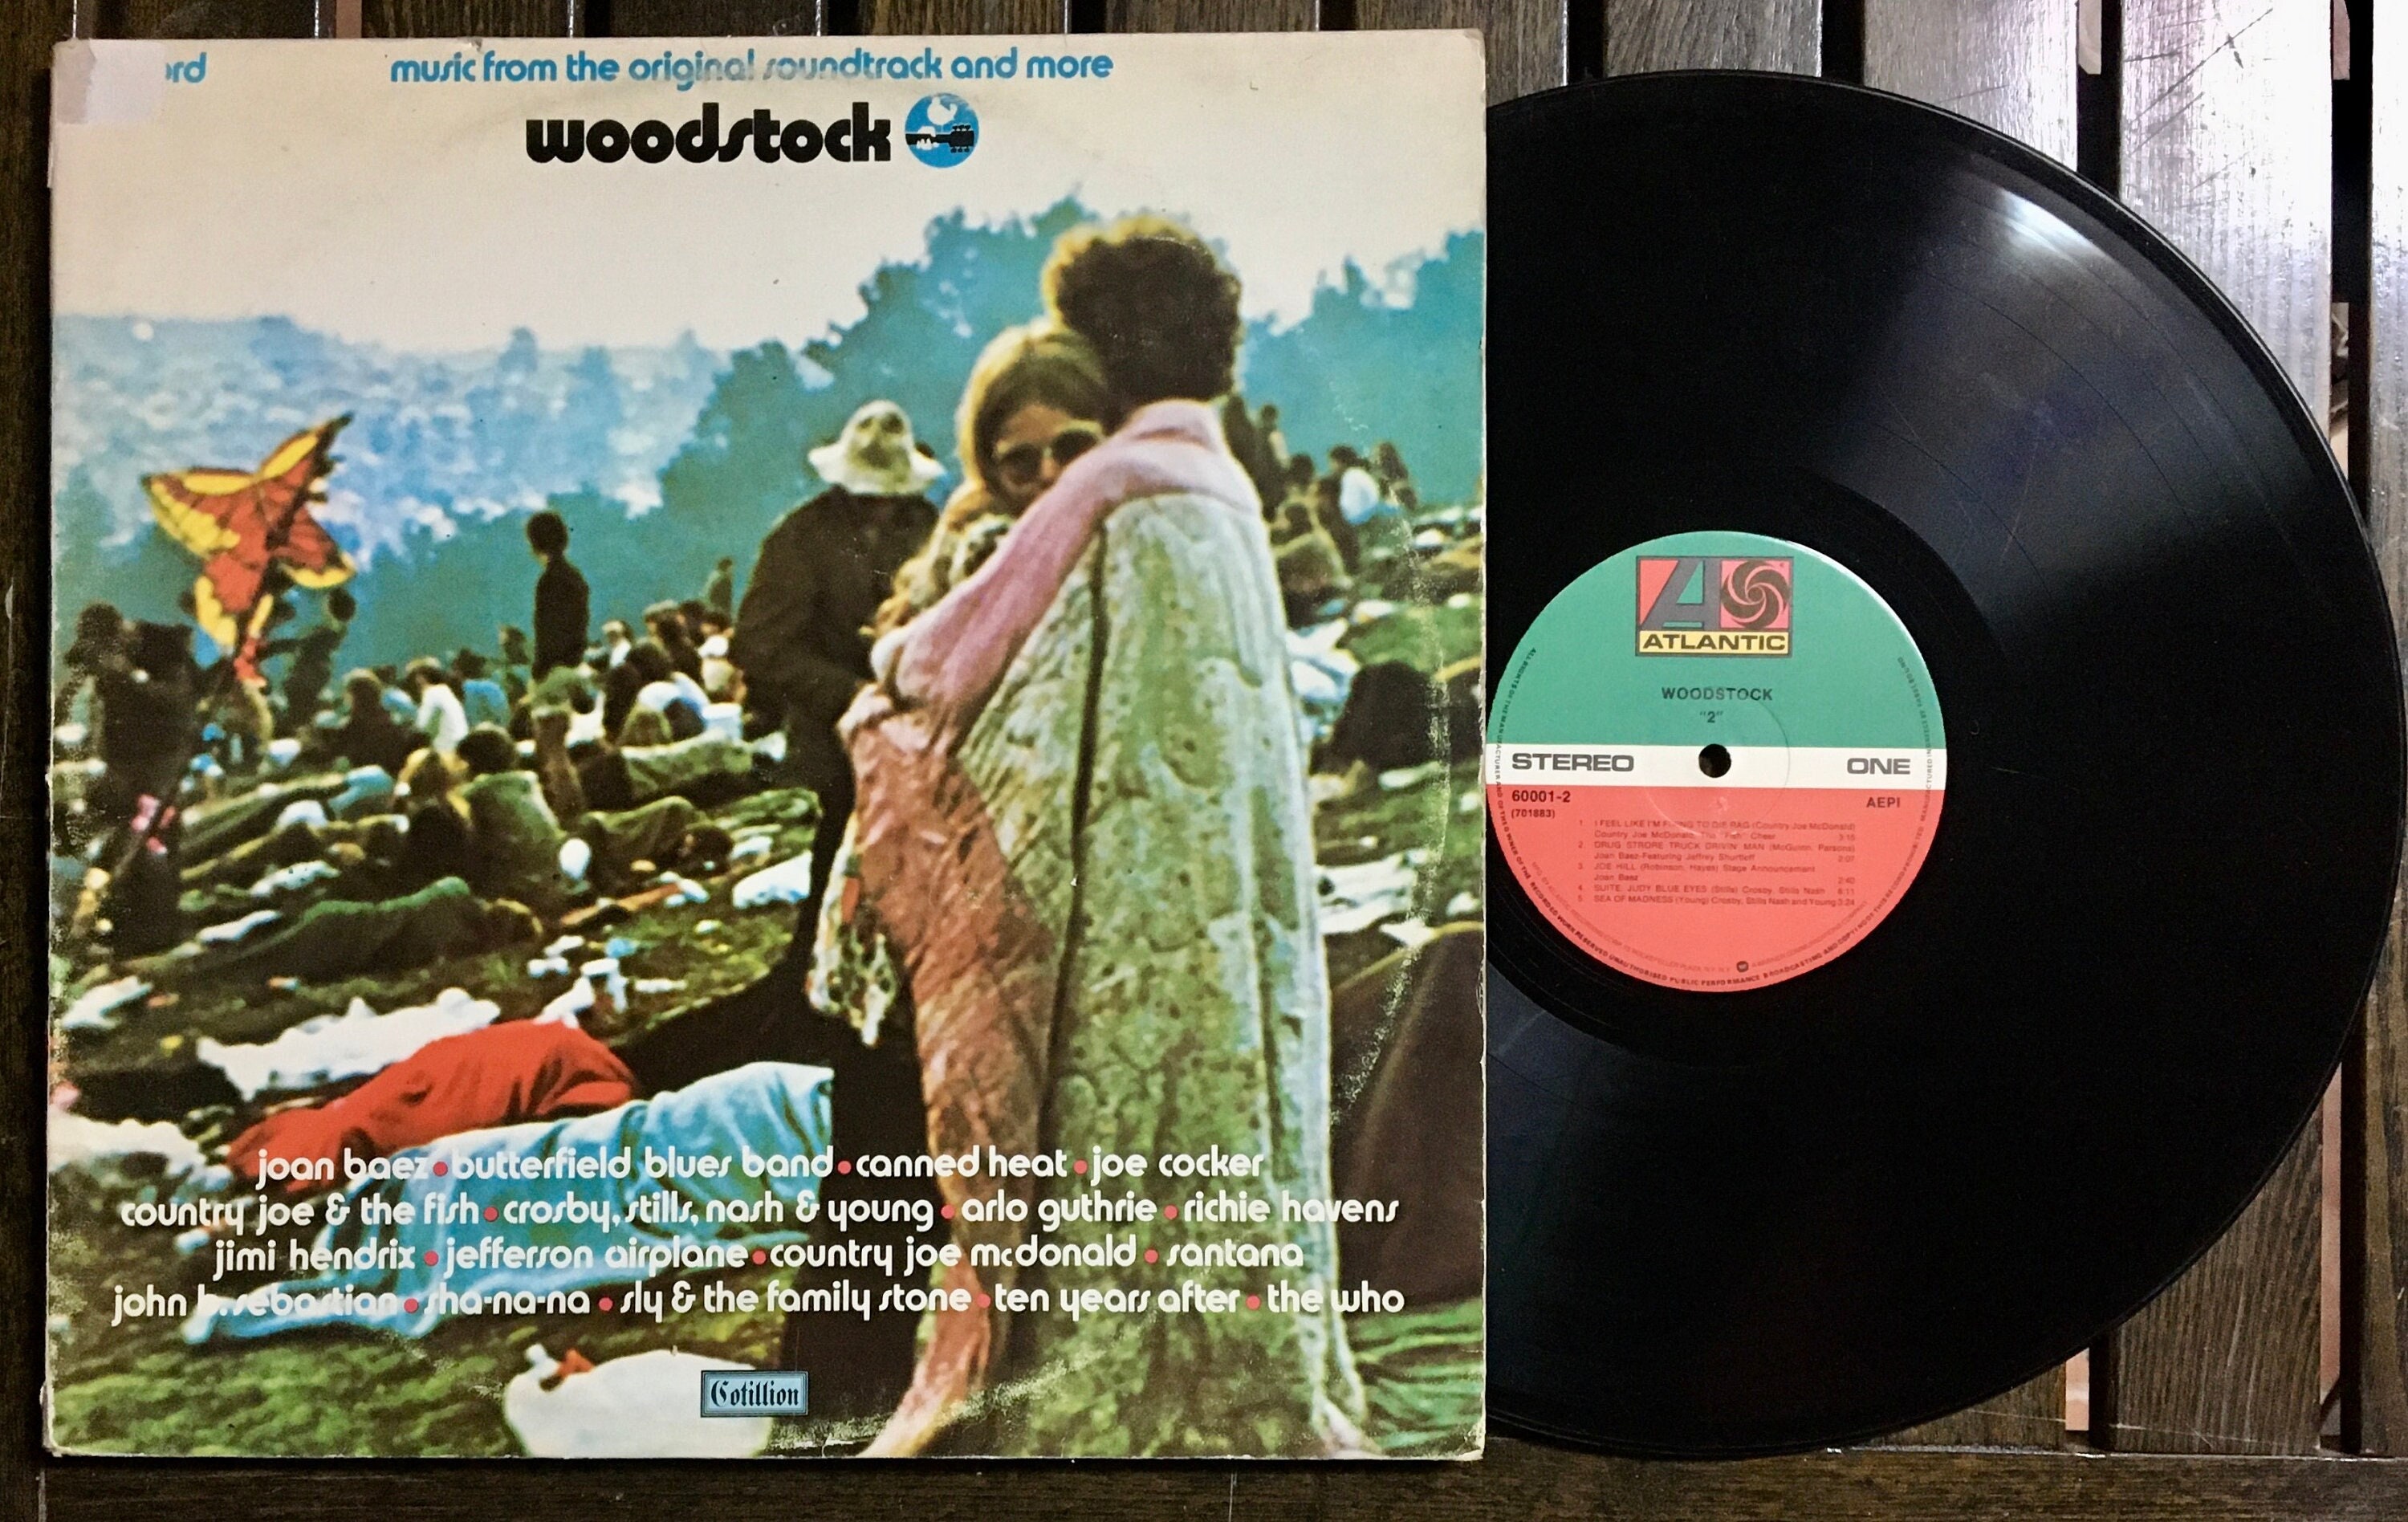 1979 Woodstock Musique de la bande originale et plus encore - Etsy France